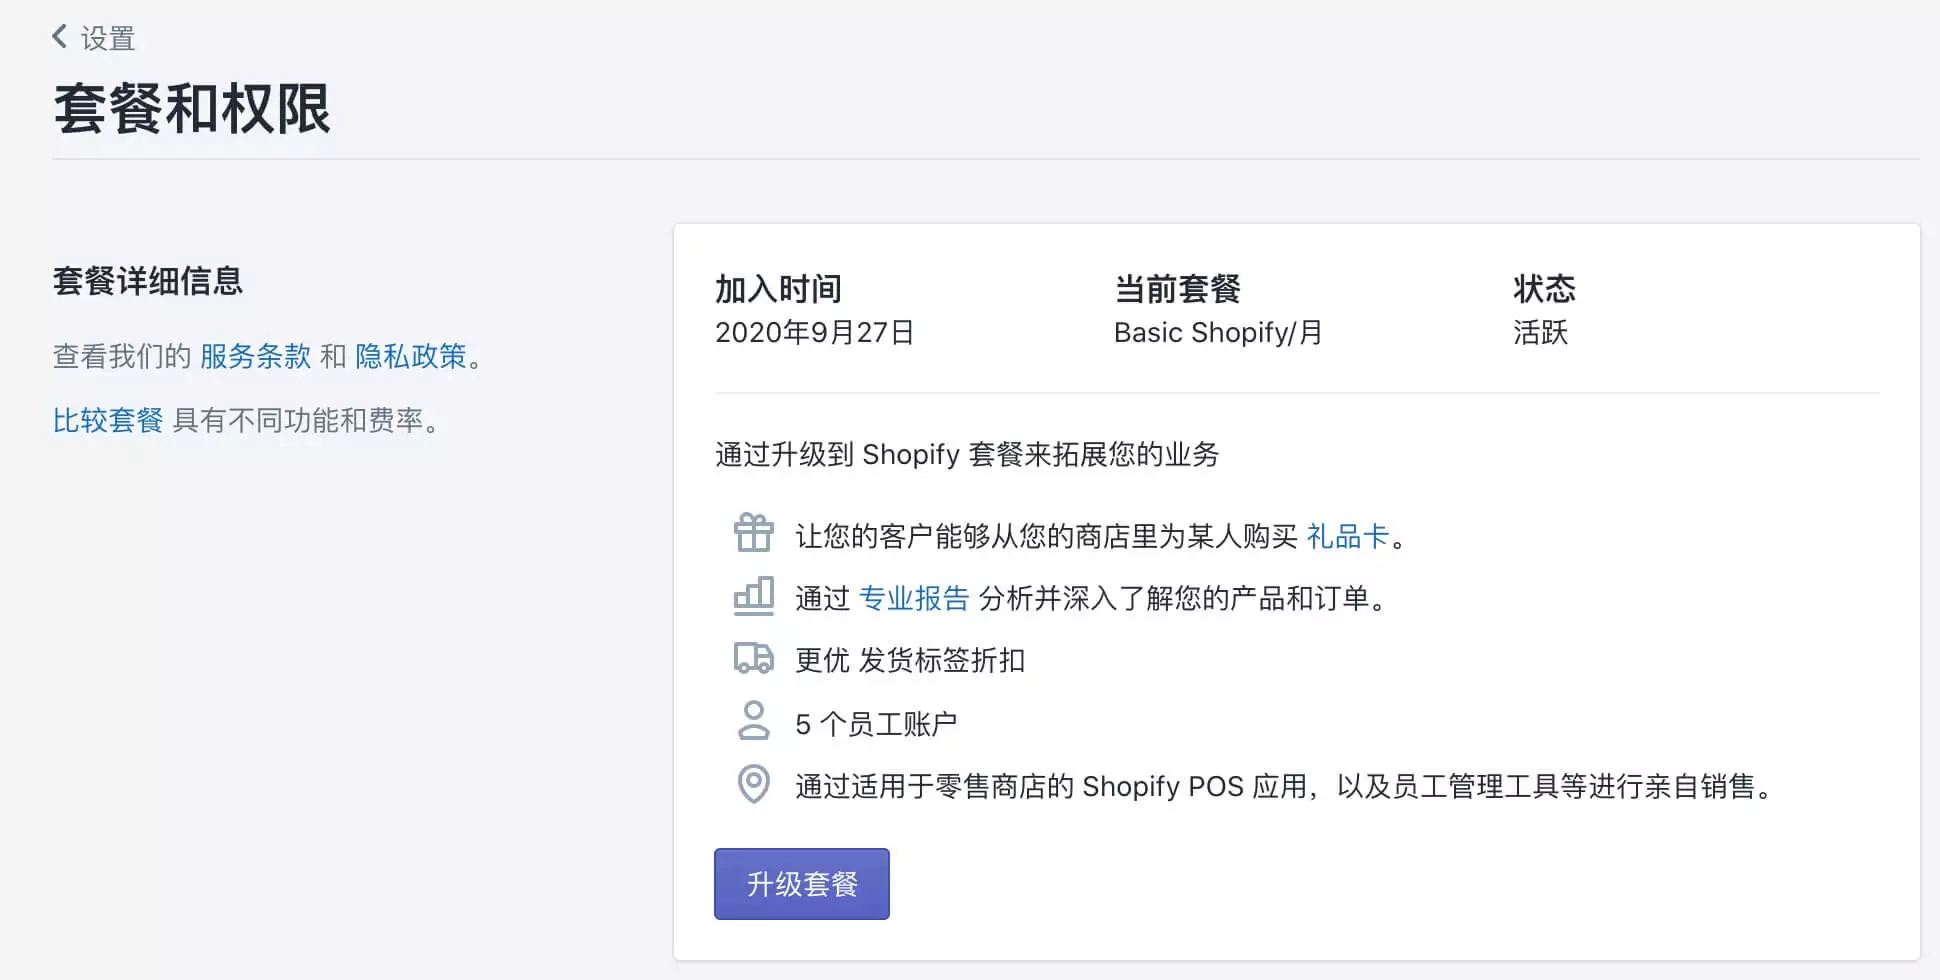 Shopify如何注册账户？有什么流程和注意事项？